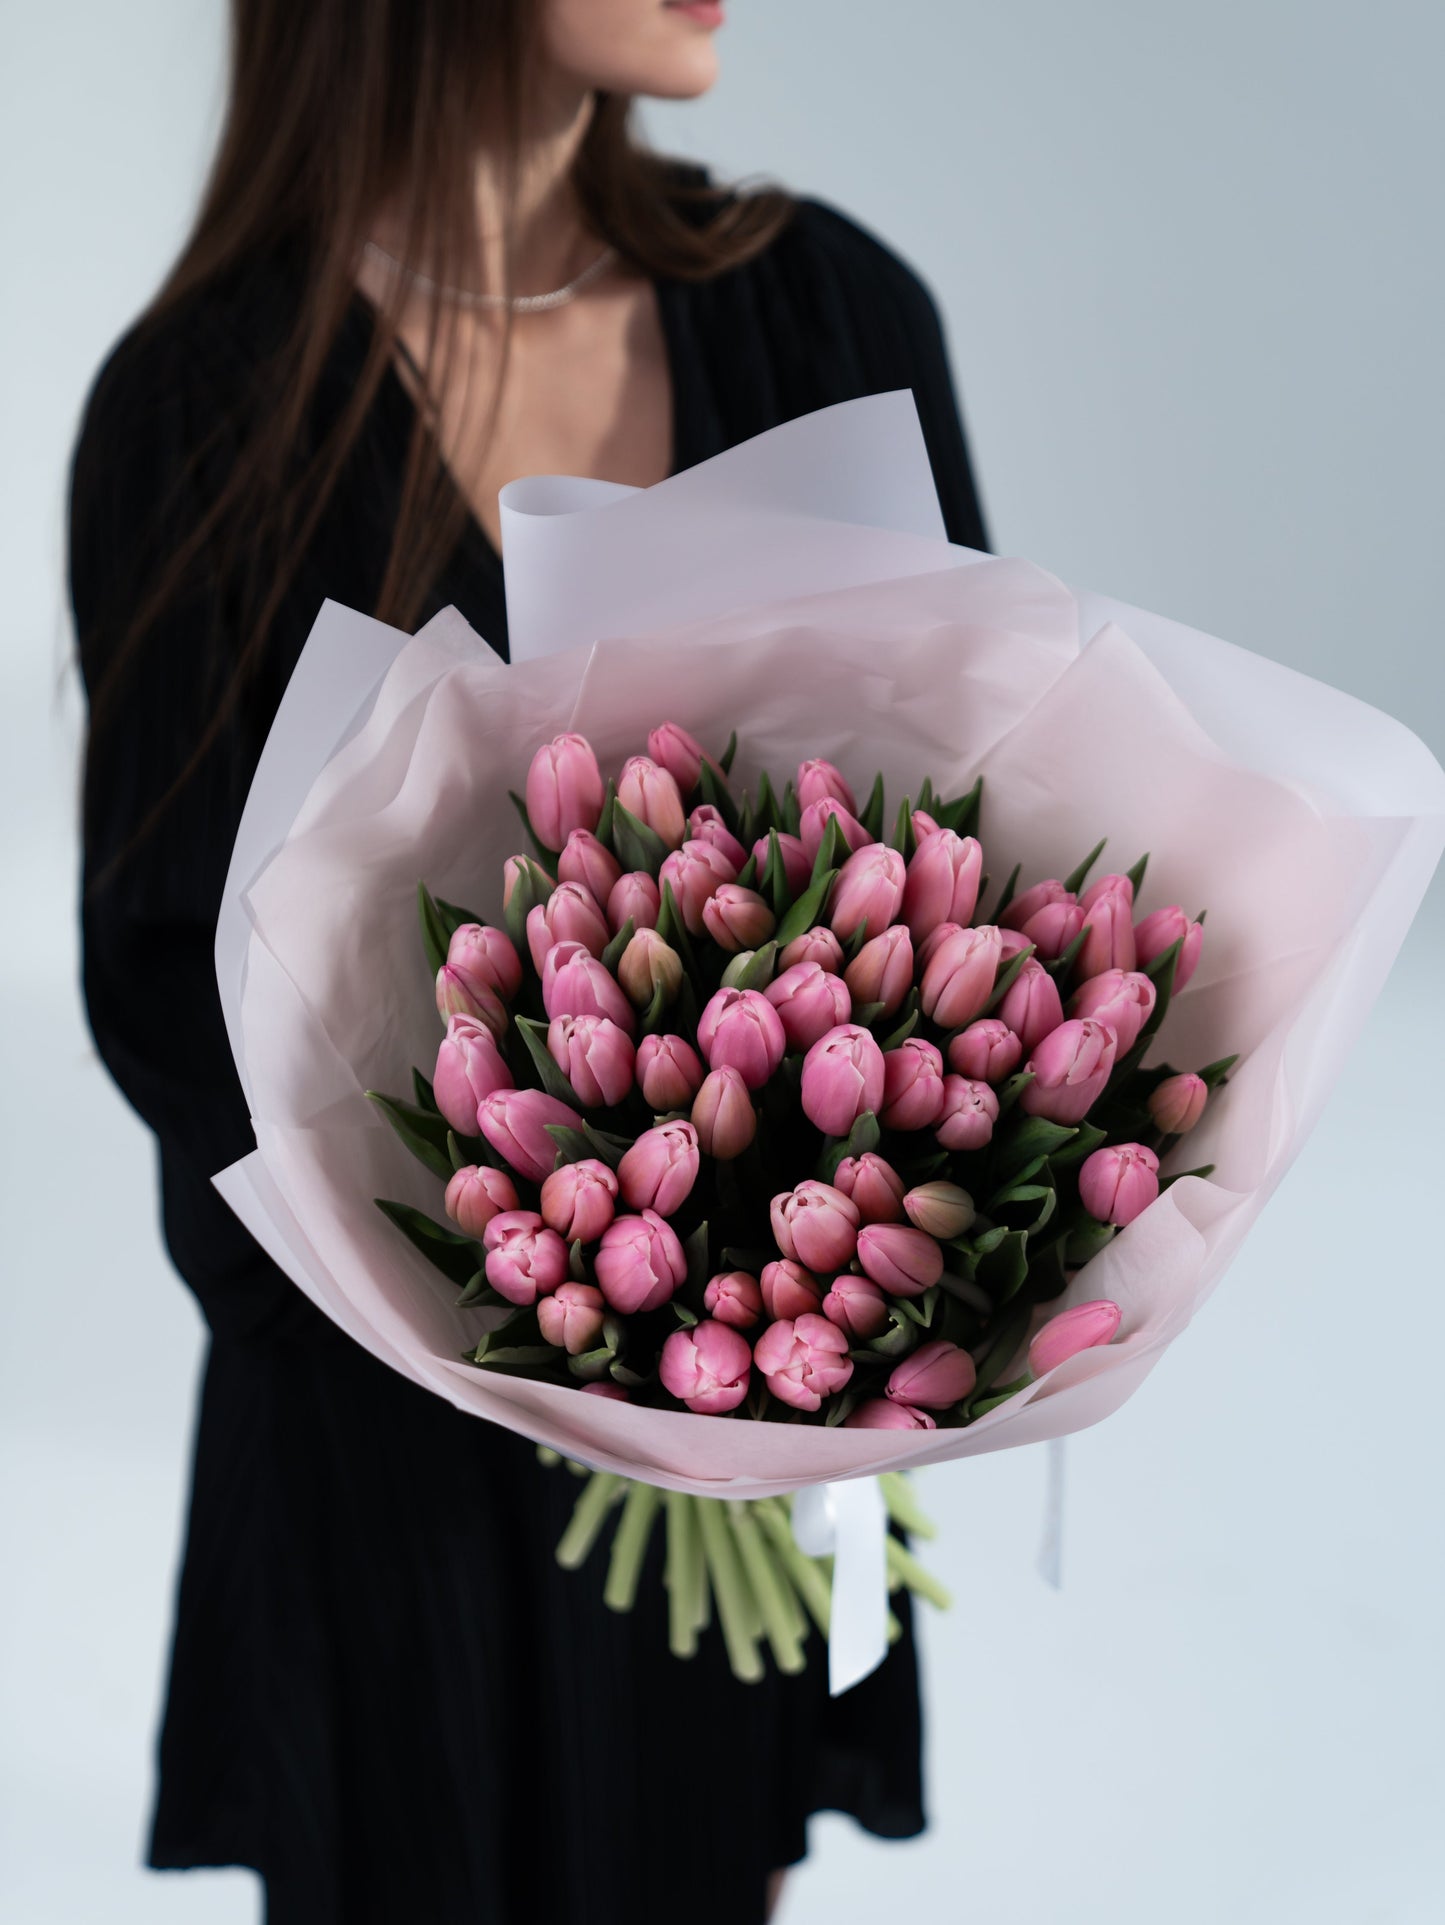 
                  
                    Prémiové růžové tulipány
                  
                